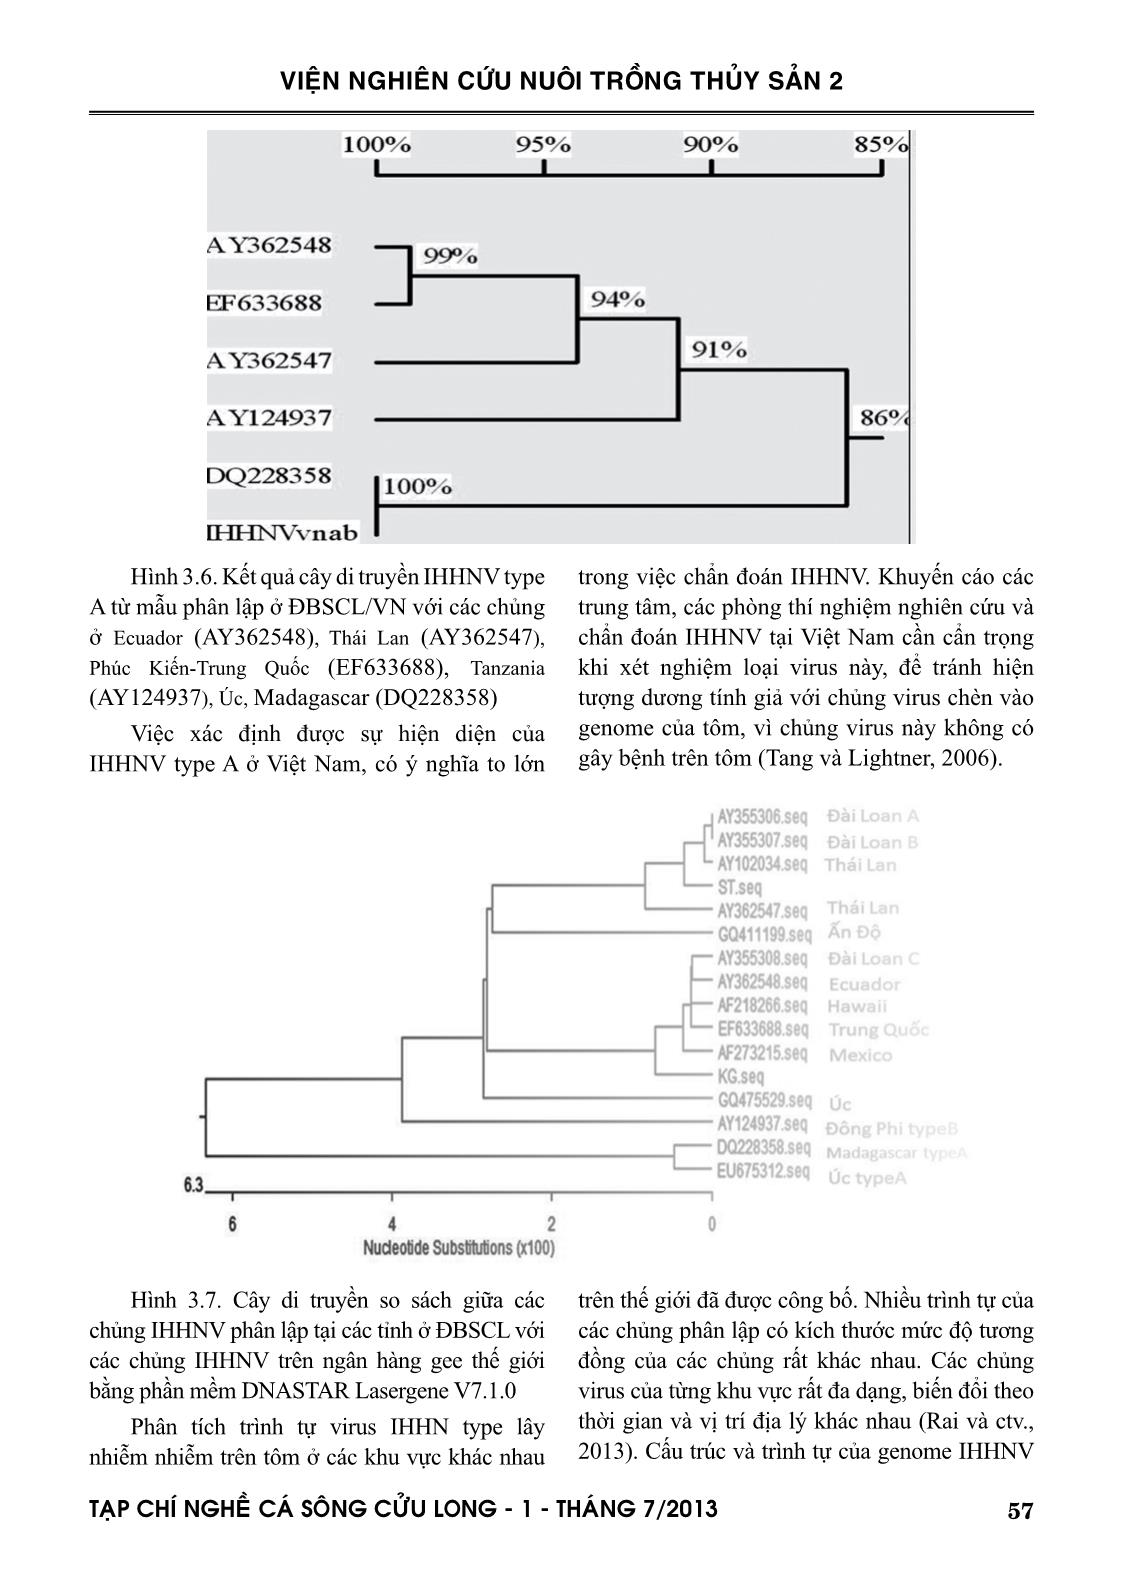 Đặc trưng di truyền của chủng IHHNV phân lập tôm nuôi ở đồng bằng sông Cửu Long trang 9